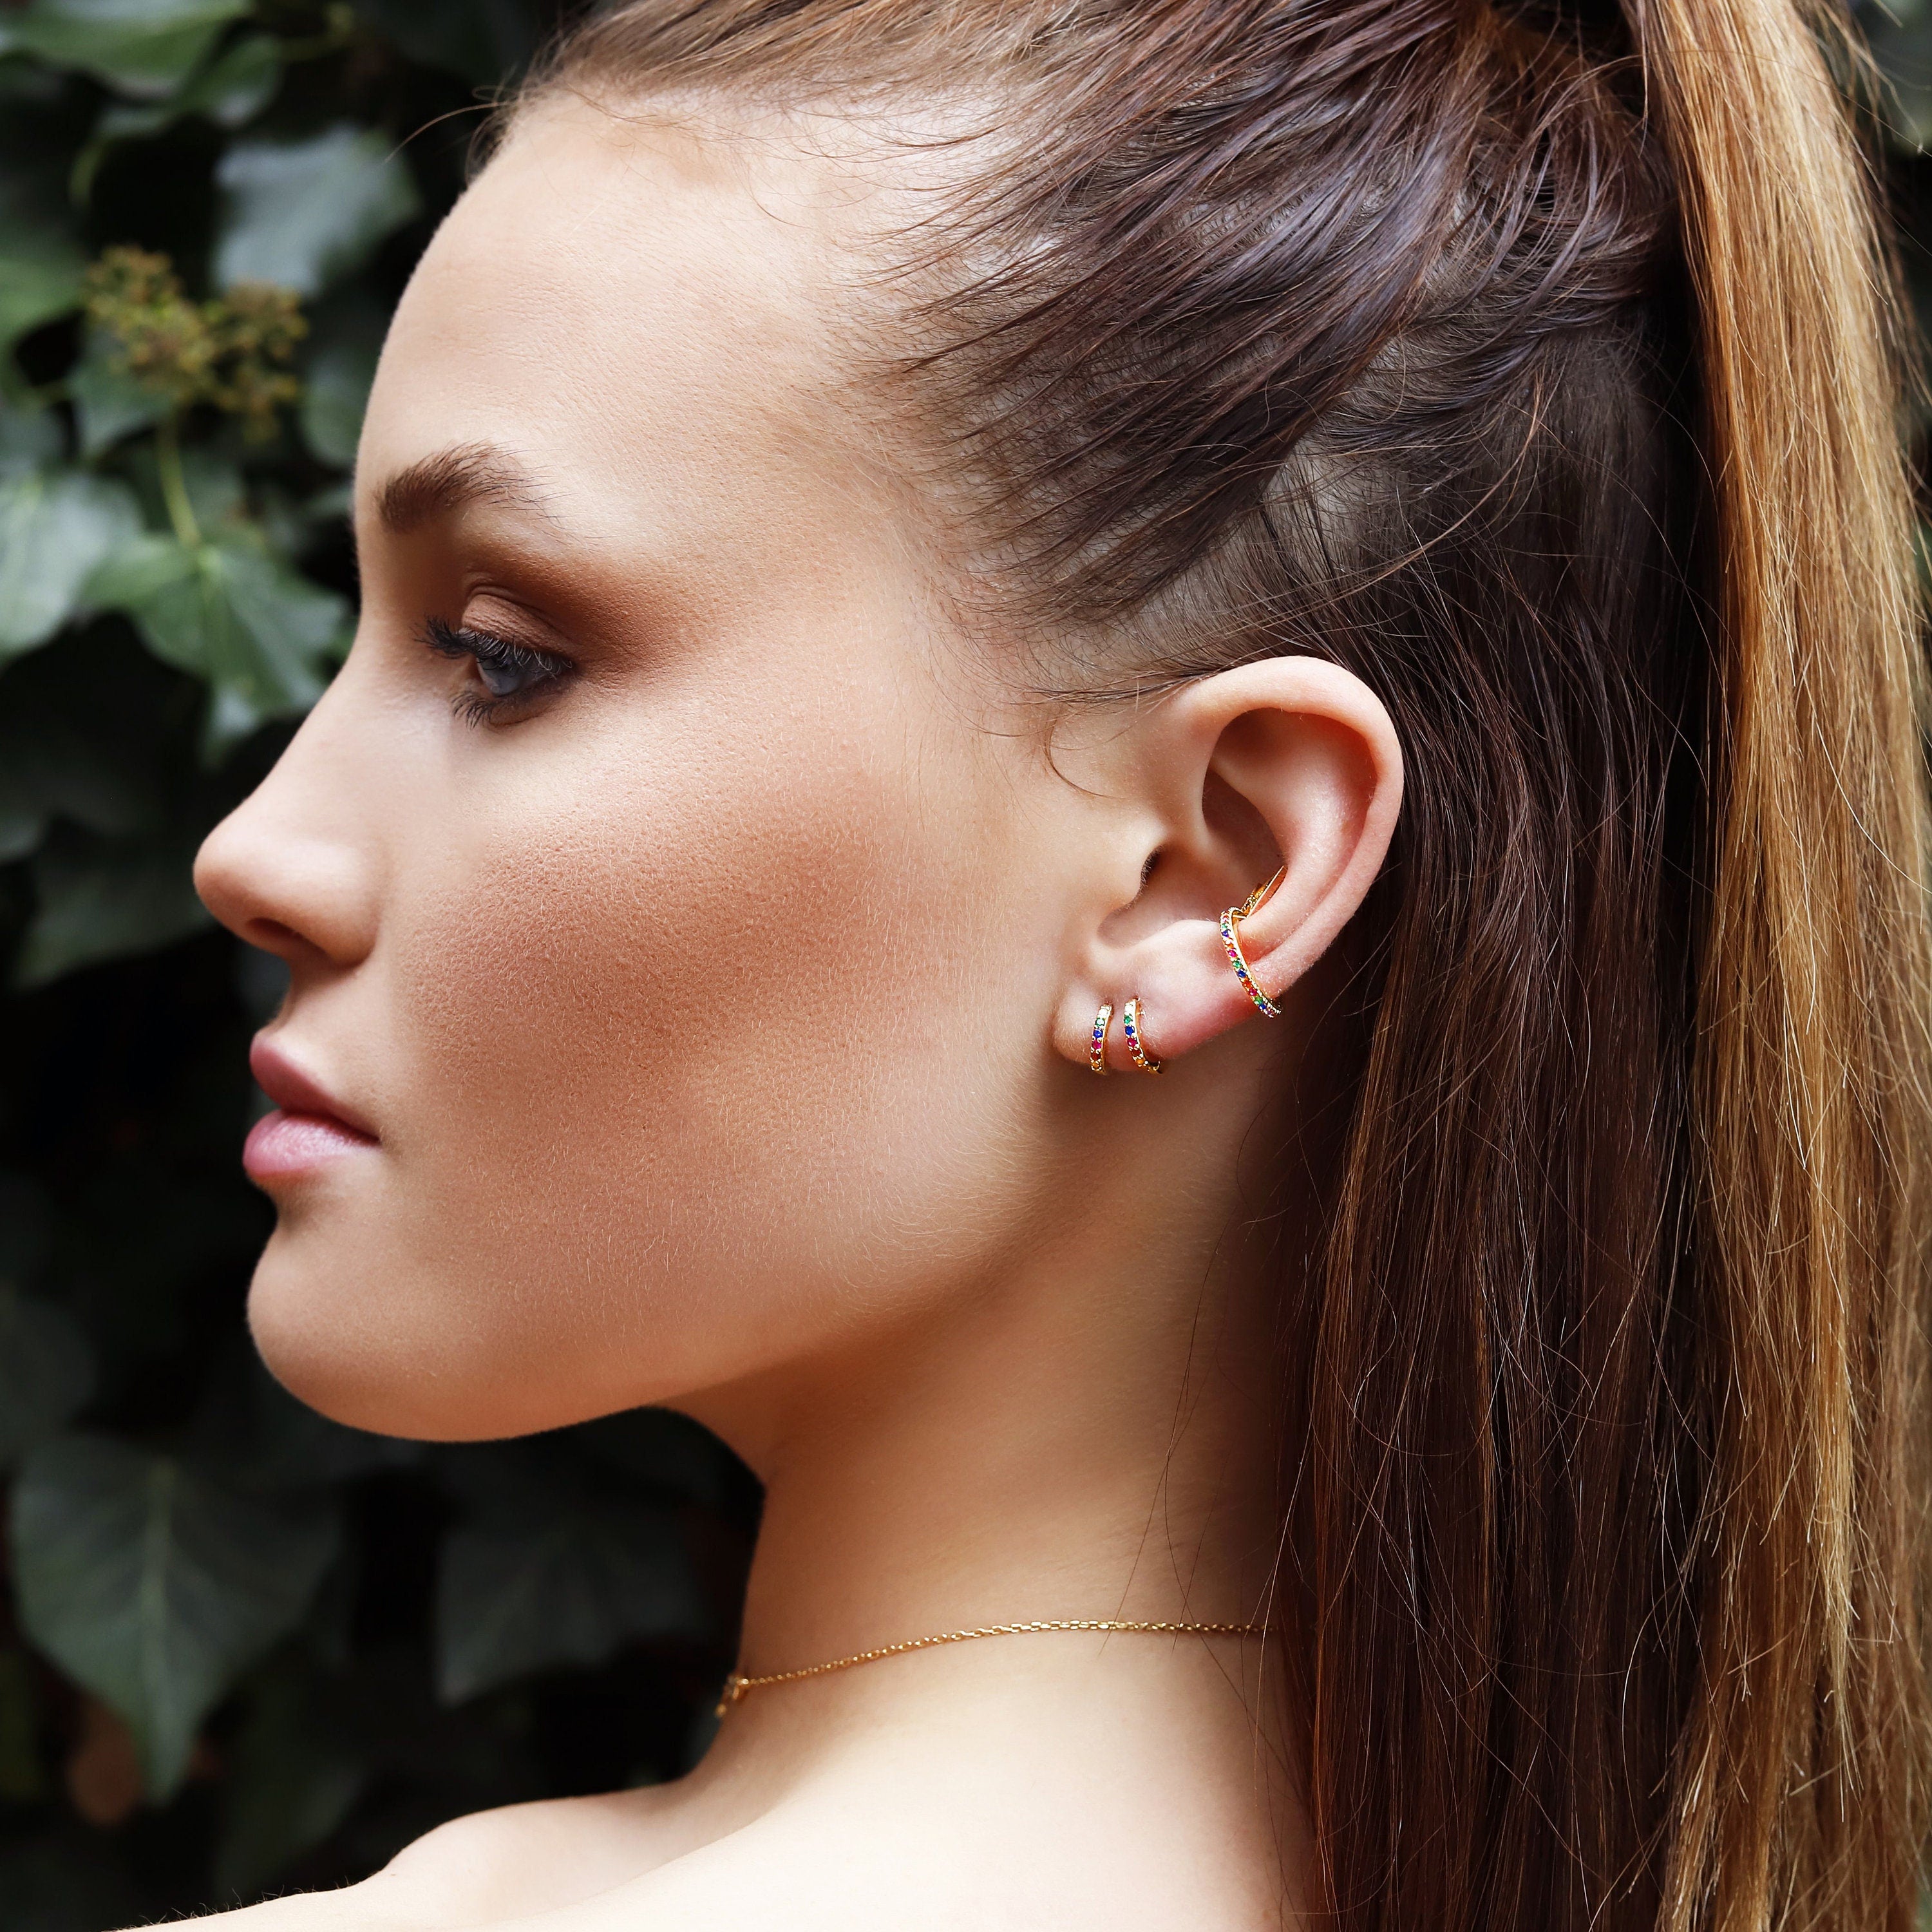 Sterling Silver Huggie Hoop Earrings | Delicate Open Earrings | Minimalist Earrings | Gold Lightweight Hoops | Simple Silver Earrings |